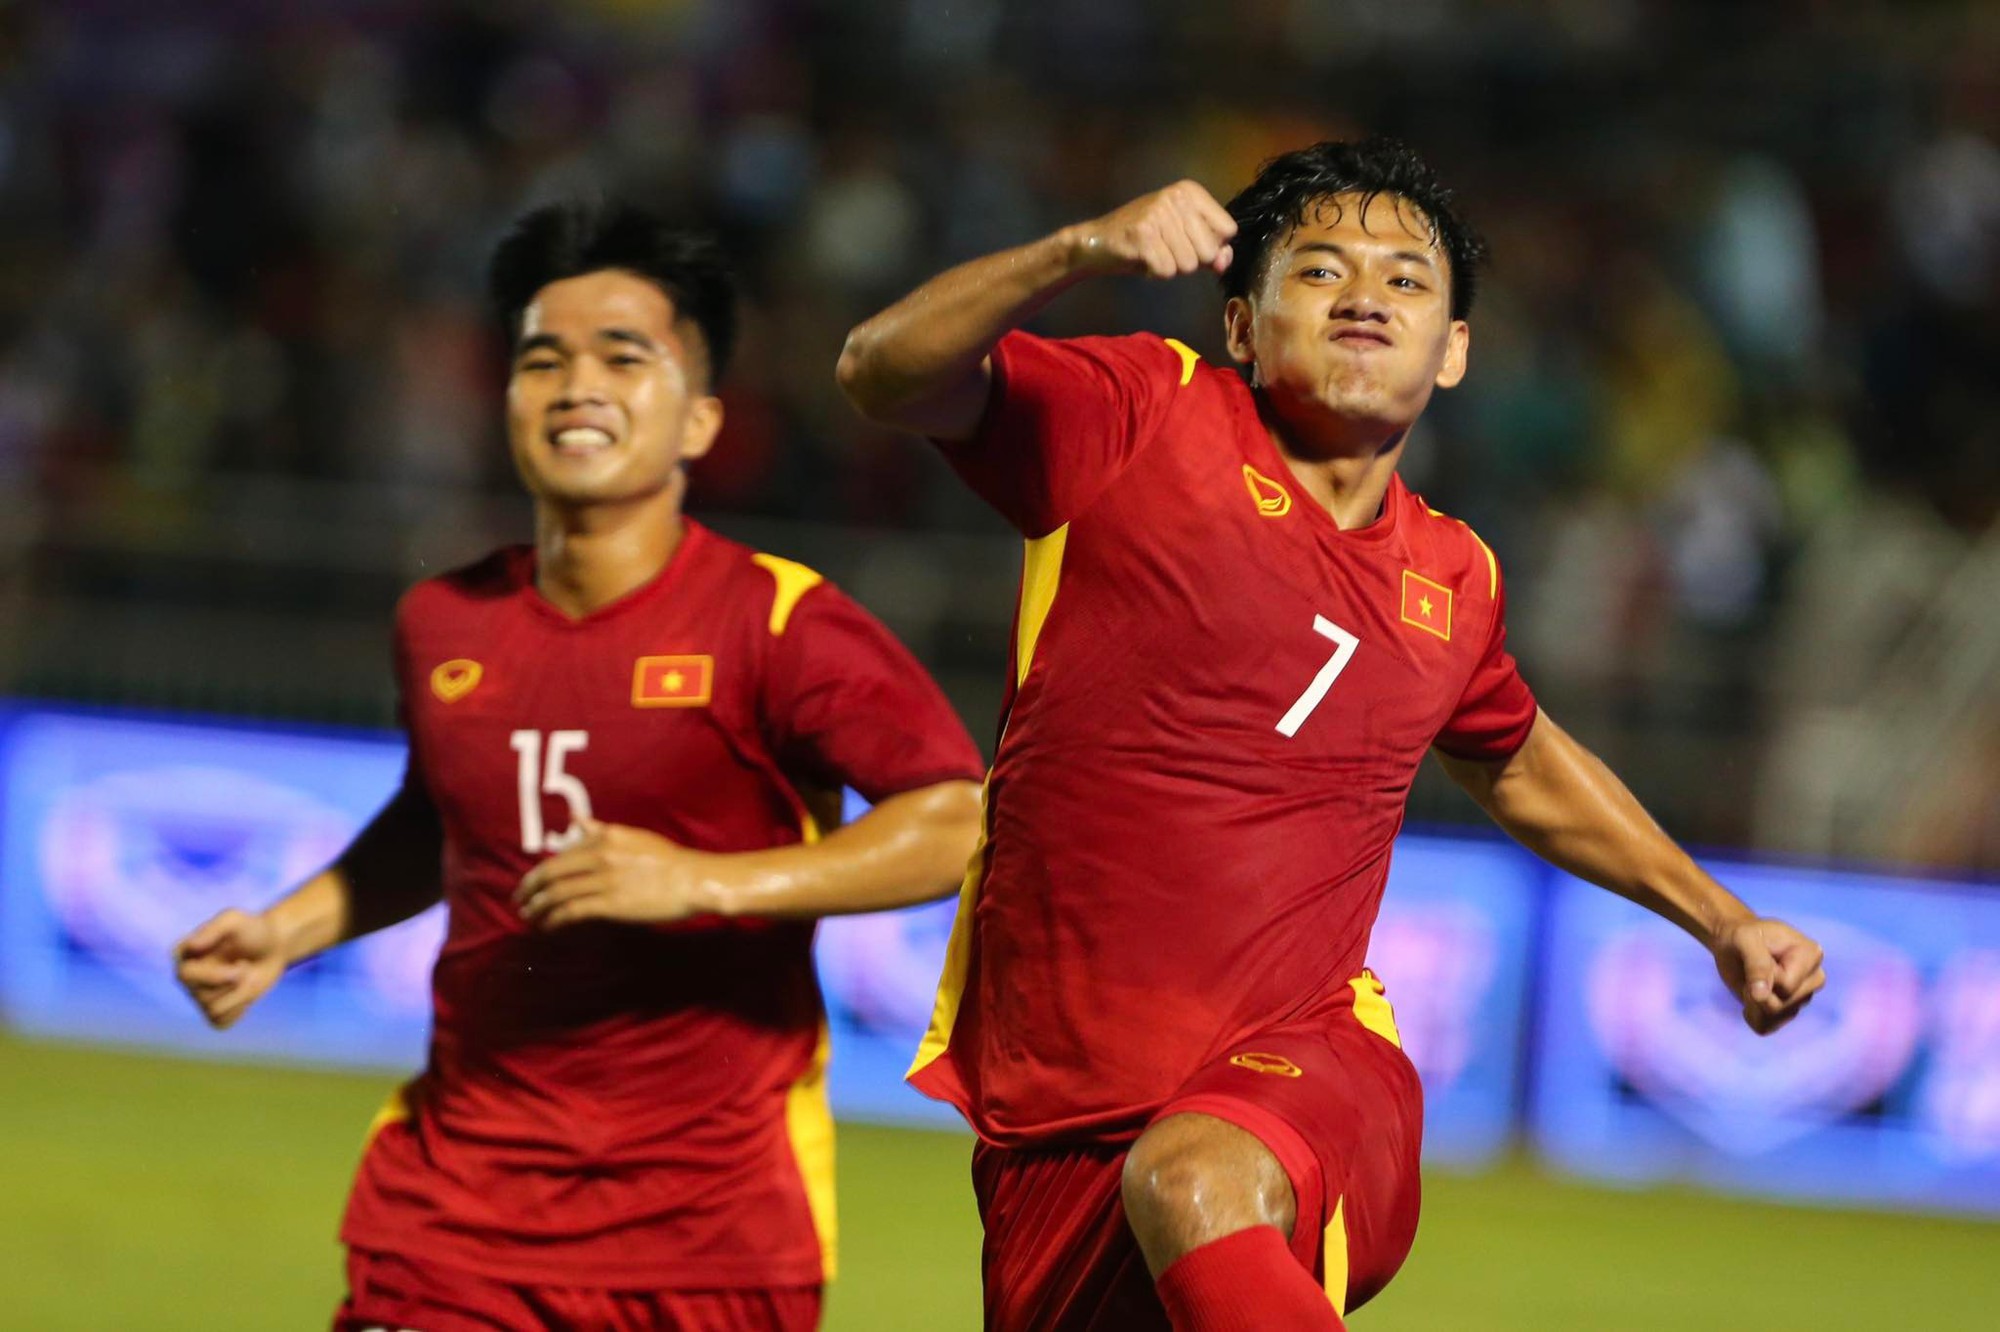 Cầu thủ trẻ liên tiếp lập công, đội tuyển Việt Nam giành chiến thắng 4-0 Singapore trận ra quân - Ảnh 1.